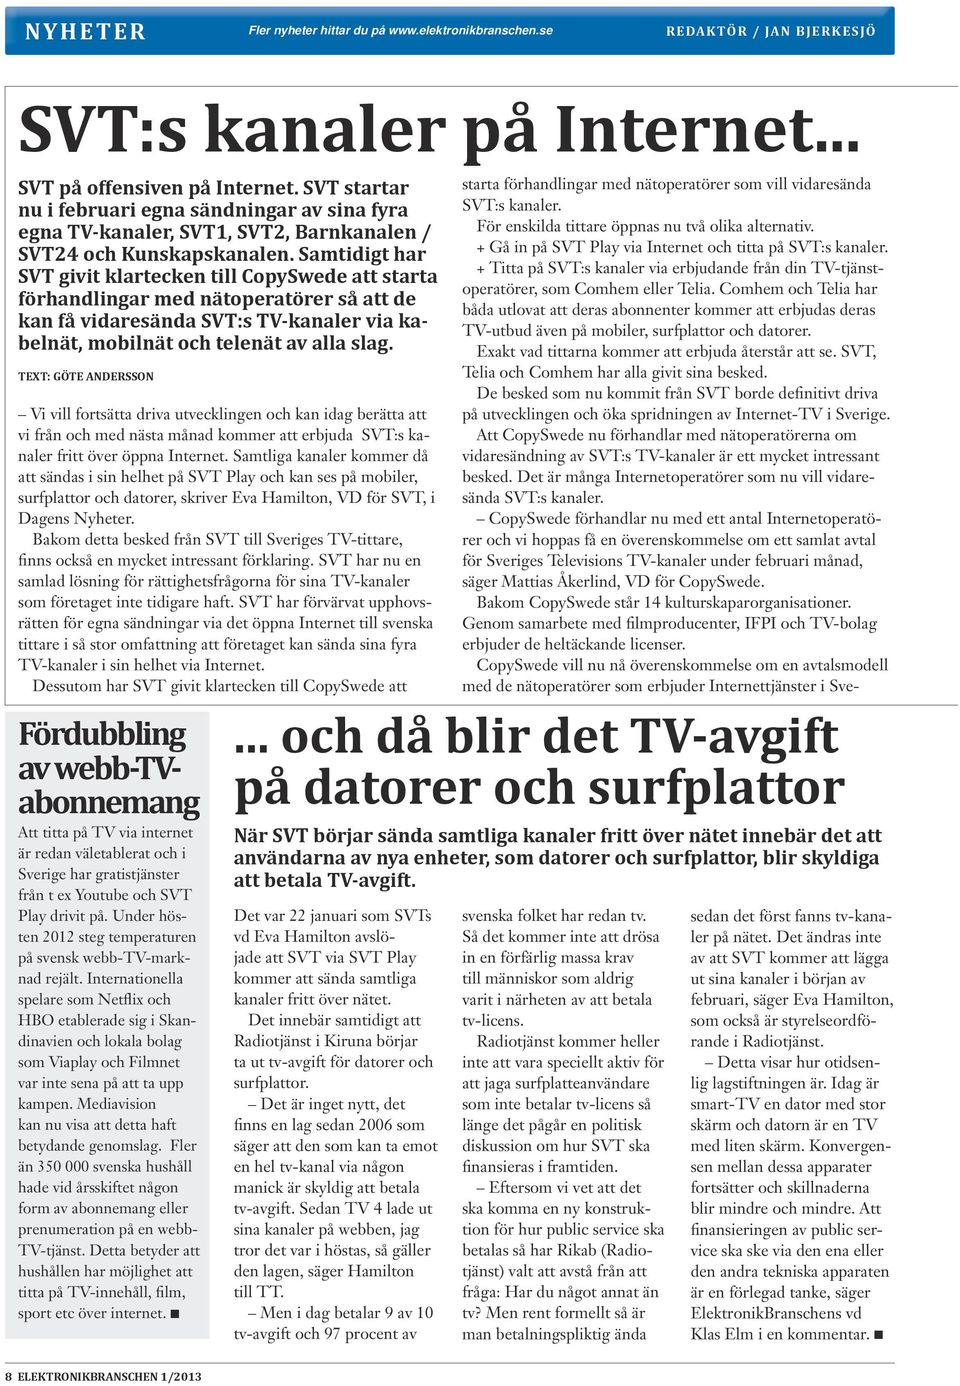 Samtidigt har SVT givit klartecken till CopySwede att starta förhandlingar med nätoperatörer så att de kan få vidaresända SVT:s TV-kanaler via kabelnät, mobilnät och telenät av alla slag.